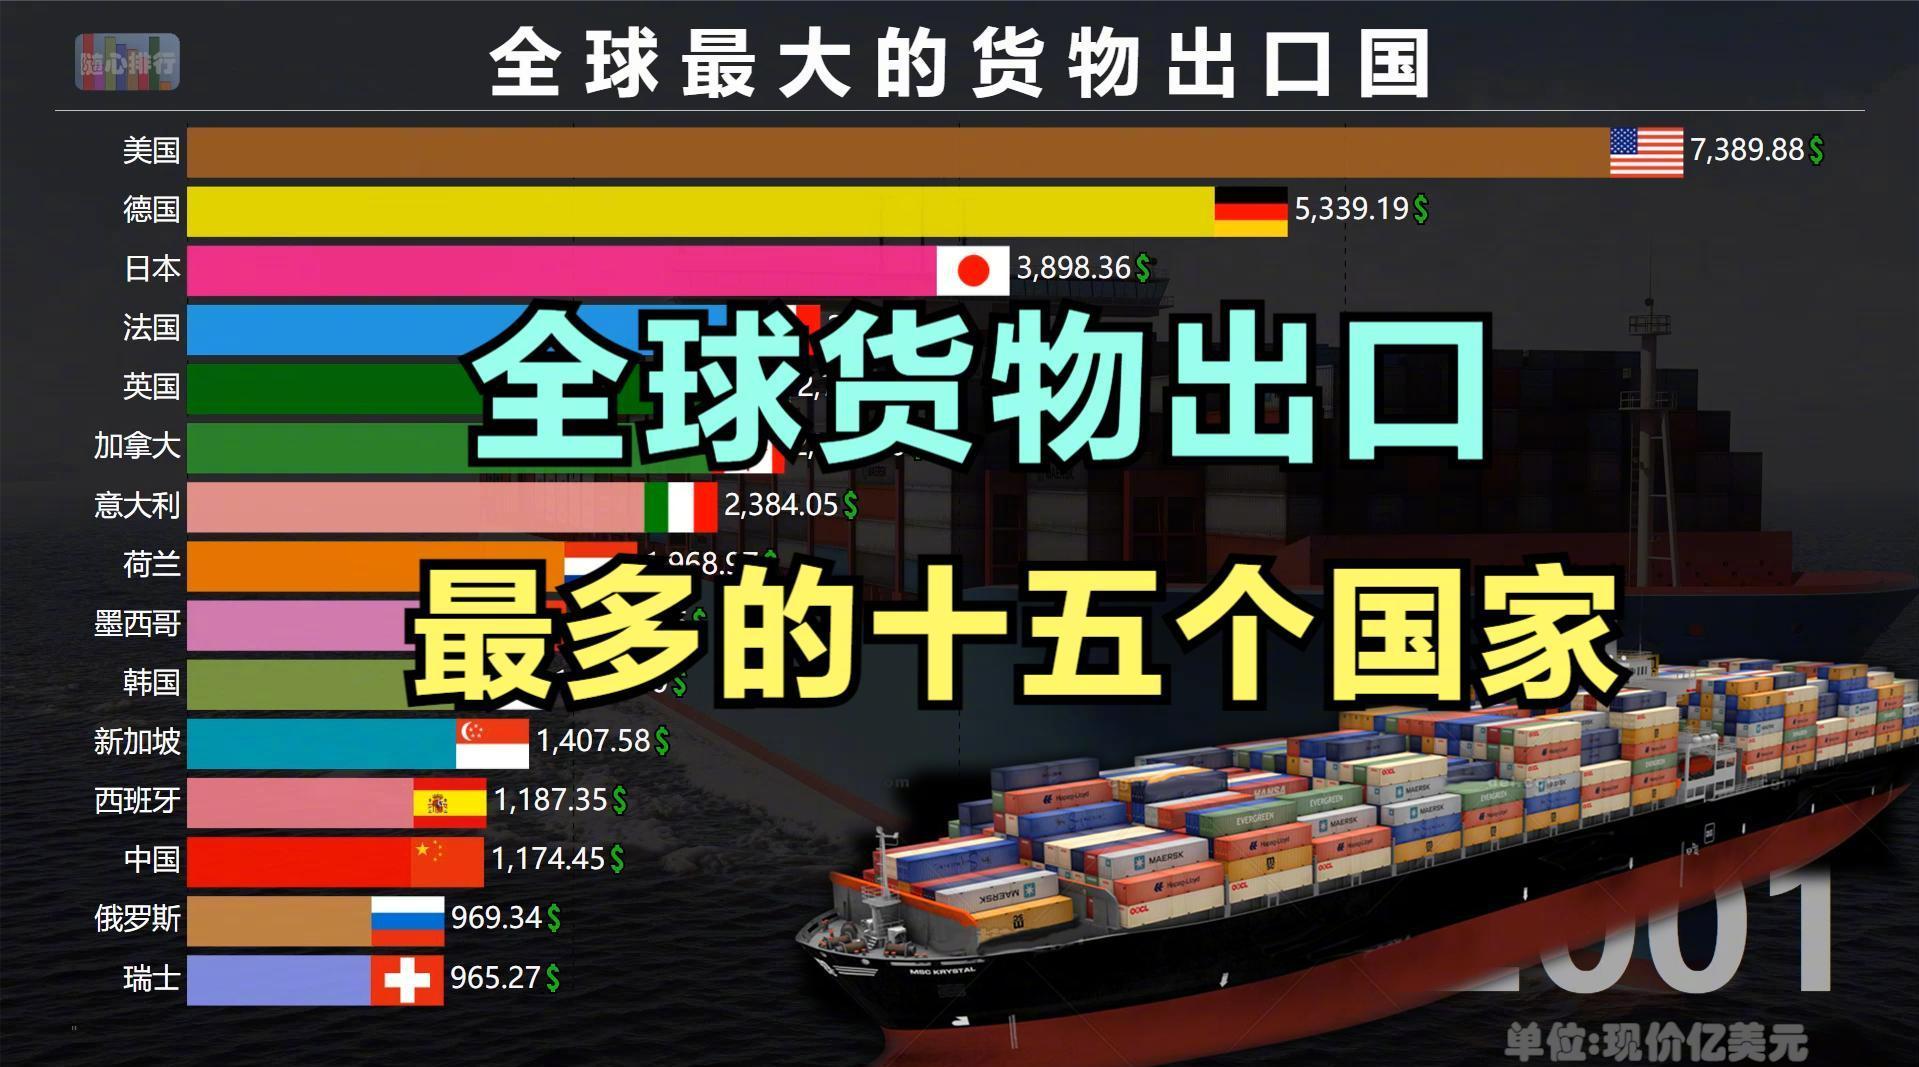 观察 | 该国赶超日本成为中国第四大贸易伙伴！同时跃升为全球第六大出口国-世展网